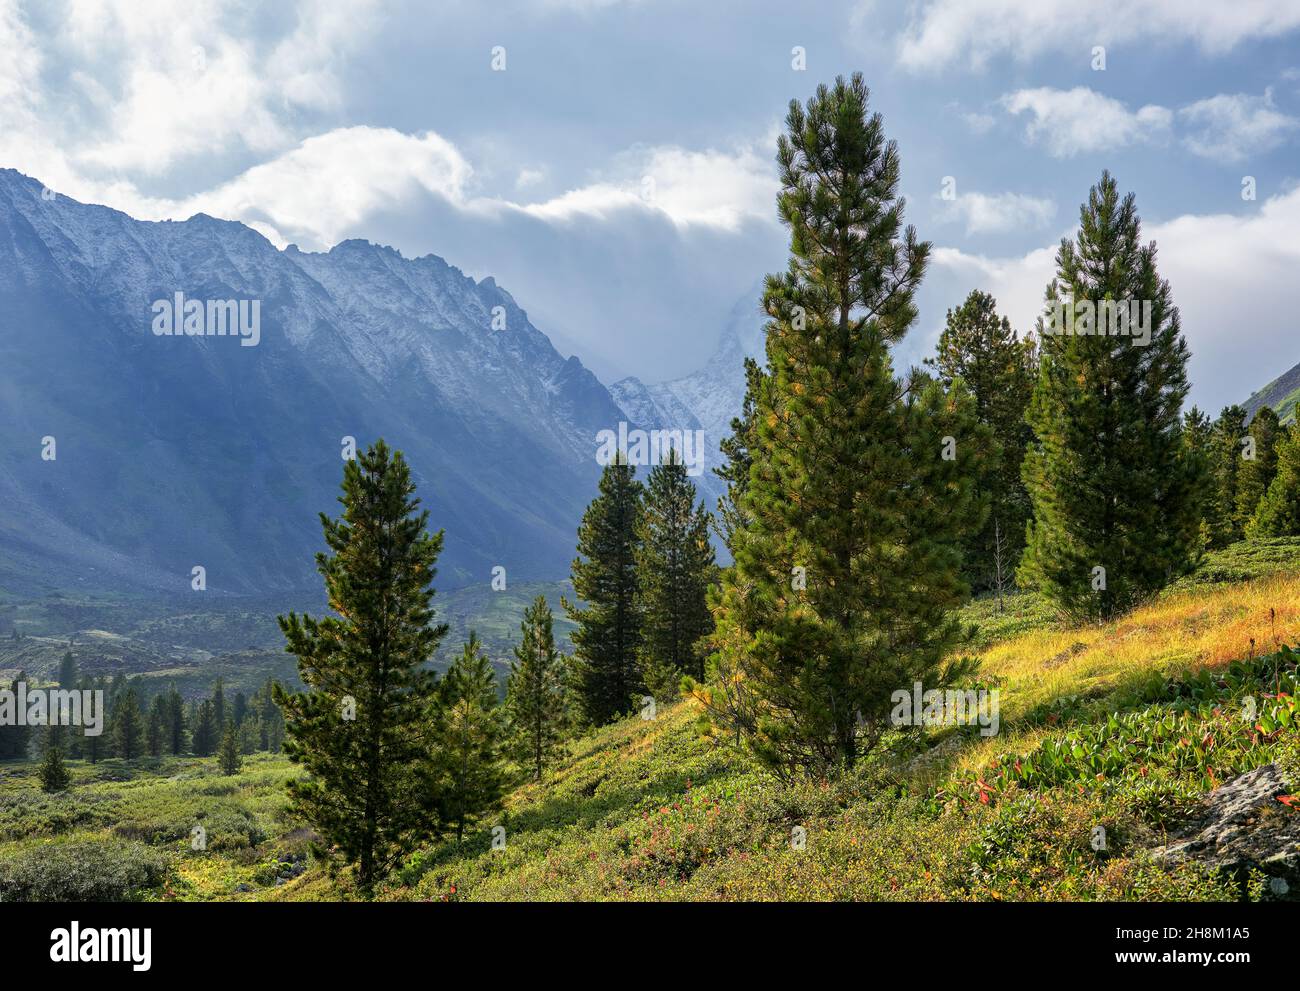 Jeunes cèdres de Sibérie minces sur une colline.Paysage de montagne.Sayan de l'est.Russie Banque D'Images